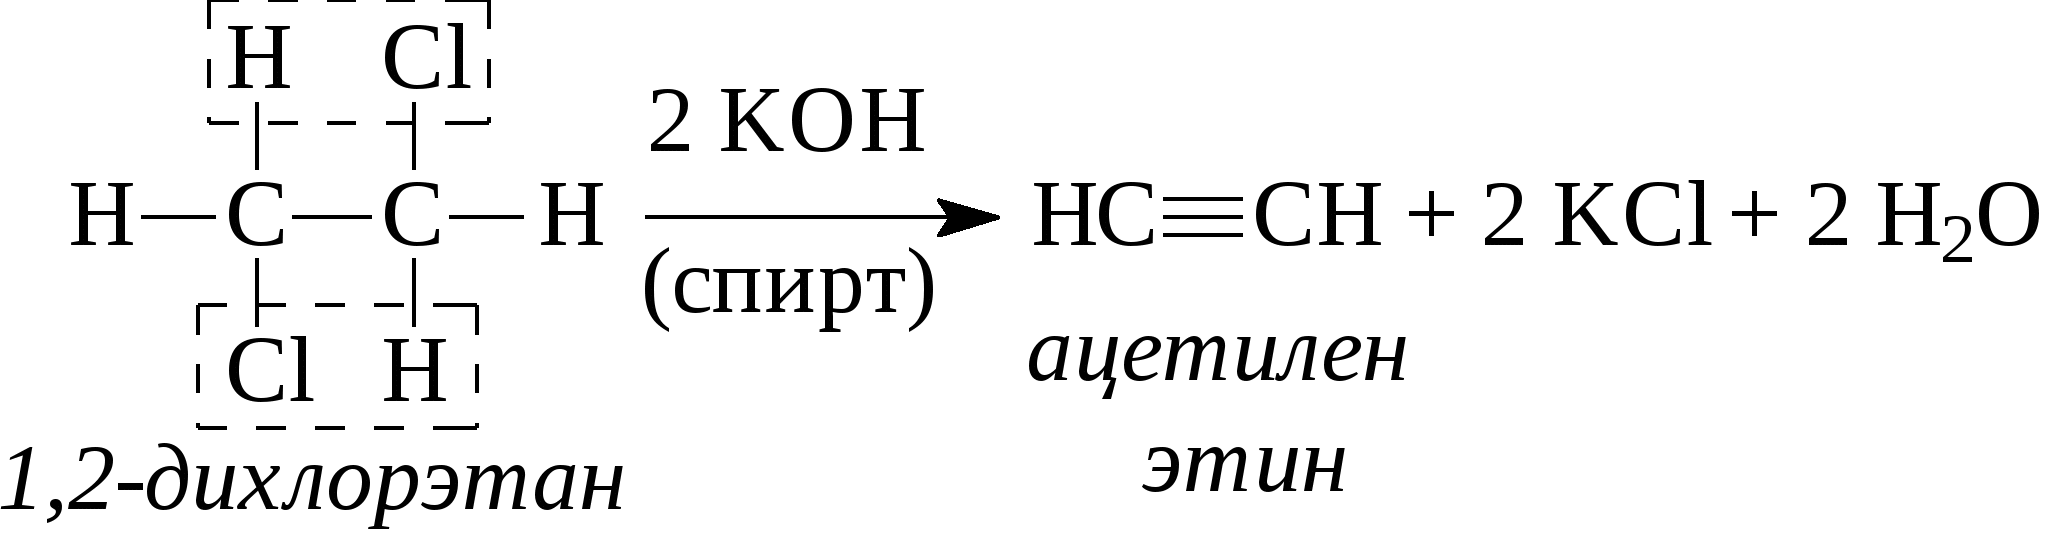 Ацетилен дихлорэтан реакция. Ацетилен в 11 дихлорэтан. 1 2 Дихлорэтан этин. 1 2 Дихлорэтан ацетилен реакция. Ch кислотность алкинов.